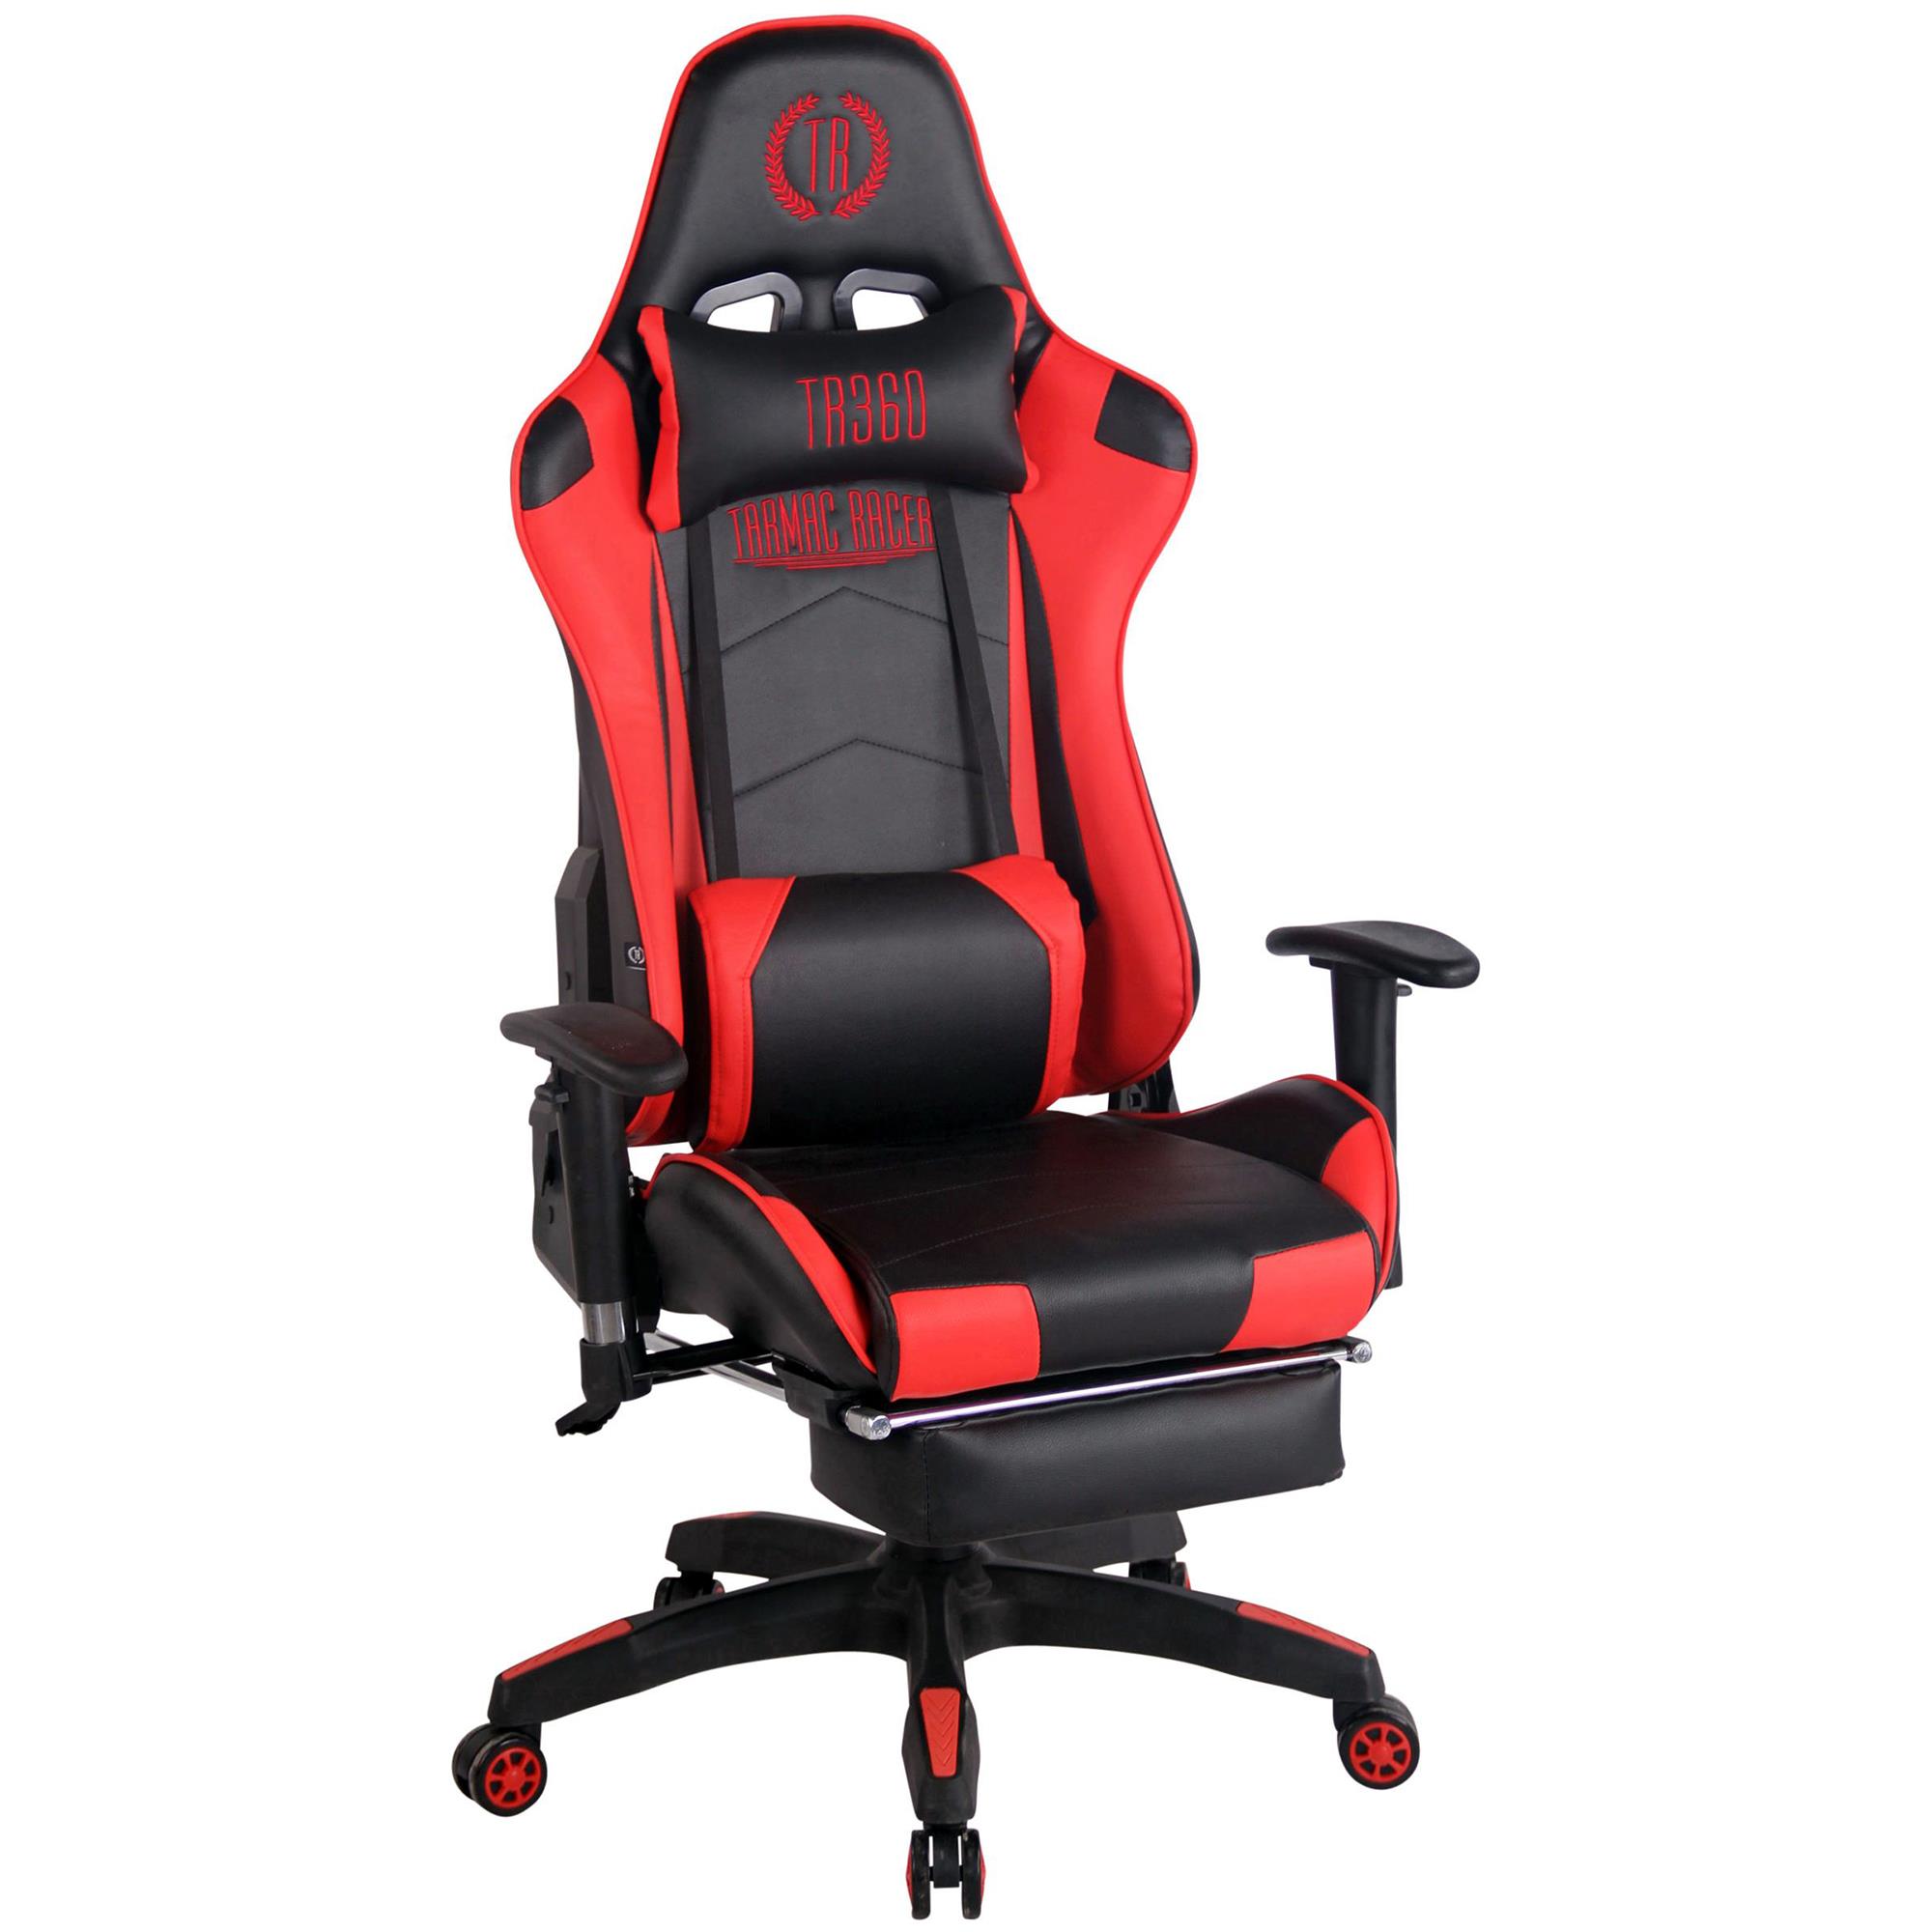 Gaming-Stuhl TURBO LEDER mit Fußablage, neigbare Rückenlehne, Nacken- und Lordosekissen, Farbe Schwarz / Rot